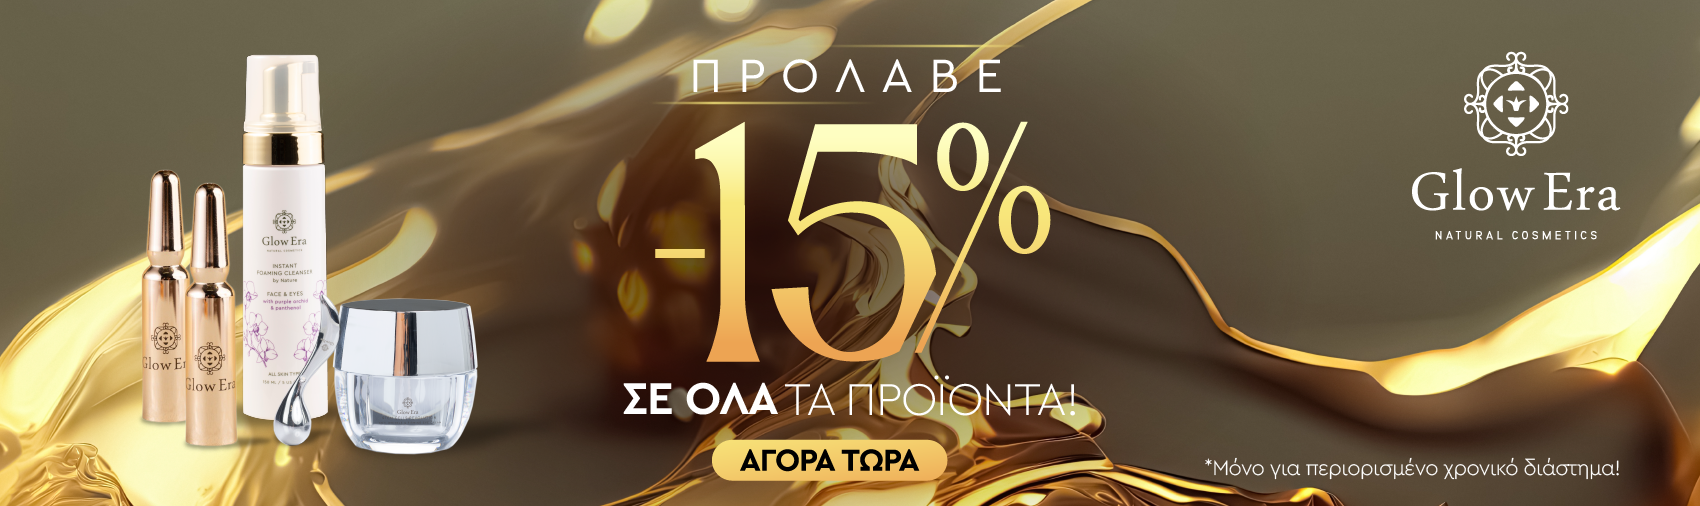 Οργανικά καλλυντικά Glow Era προσφορά φεβρουαρίου -15% σε όλα τα προϊόντα banner